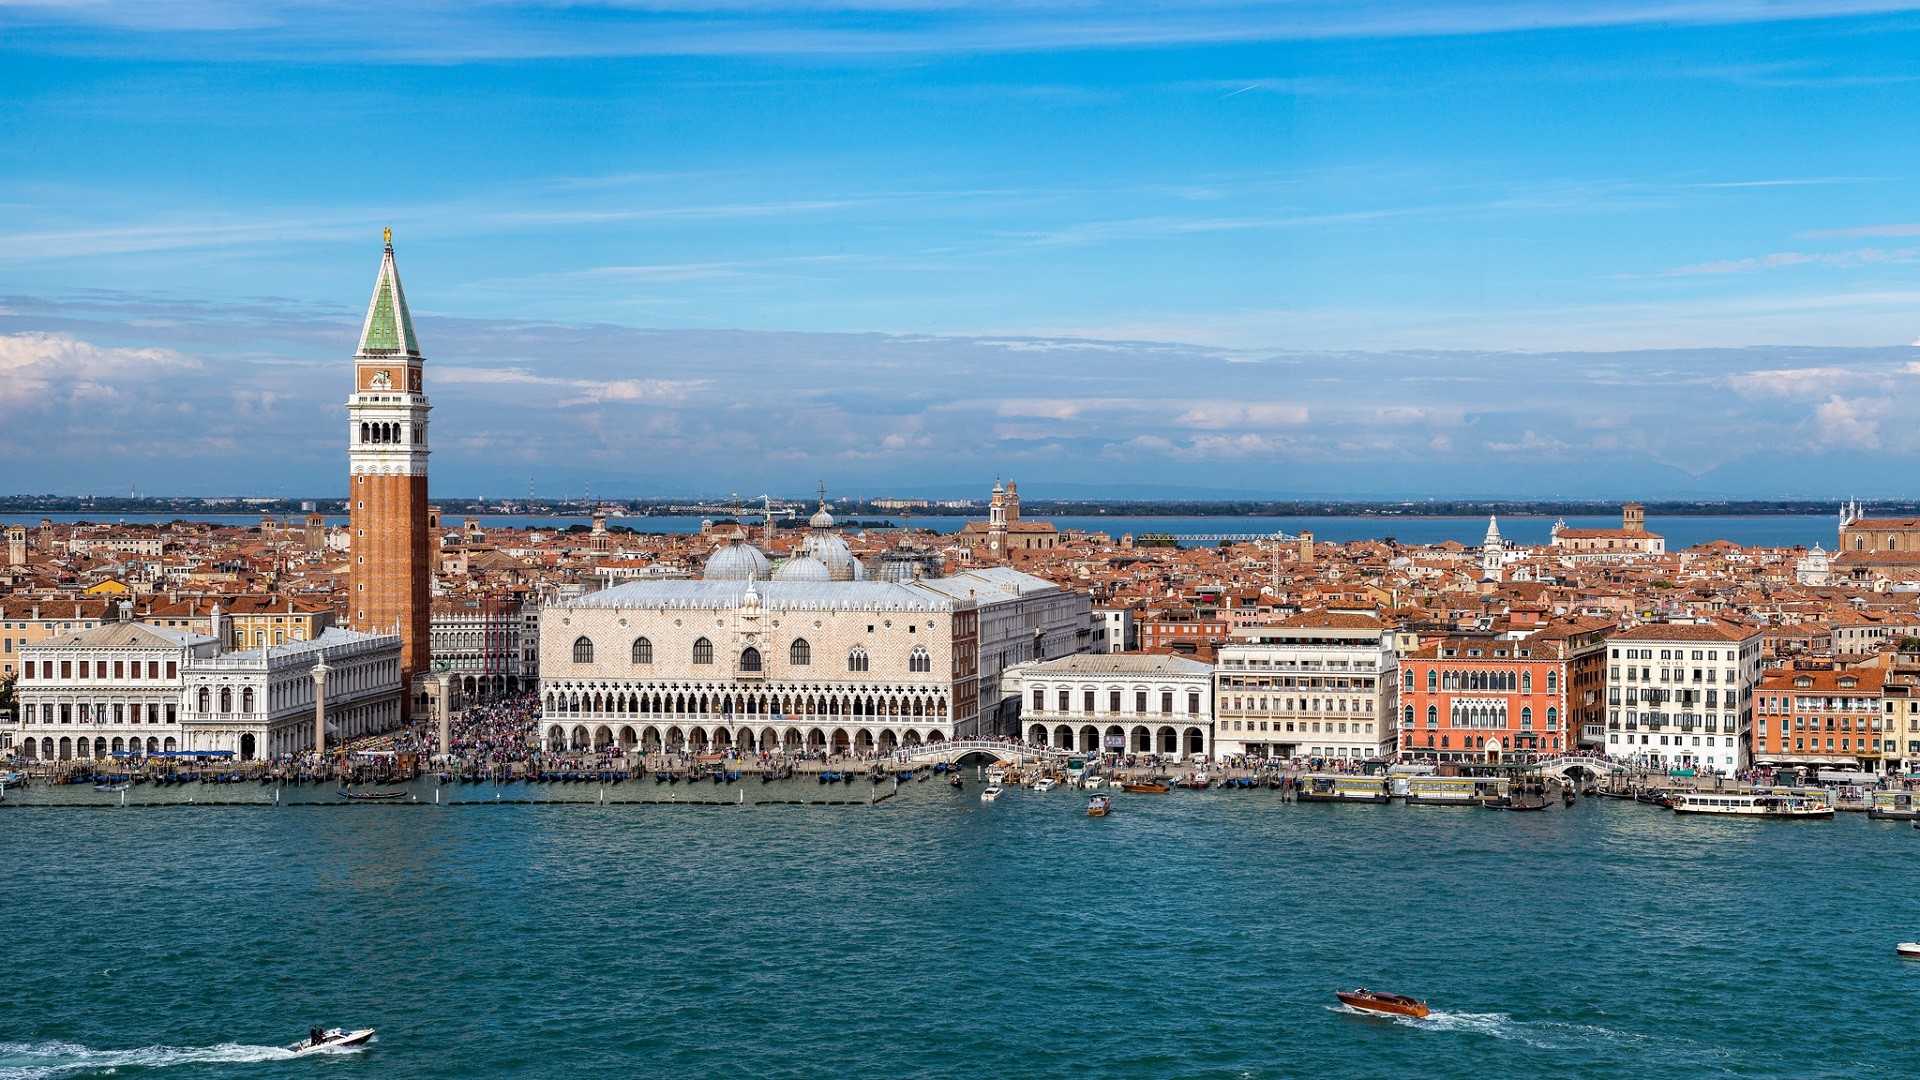 General 1920x1080 Venice Italy city cityscape architecture tower sea